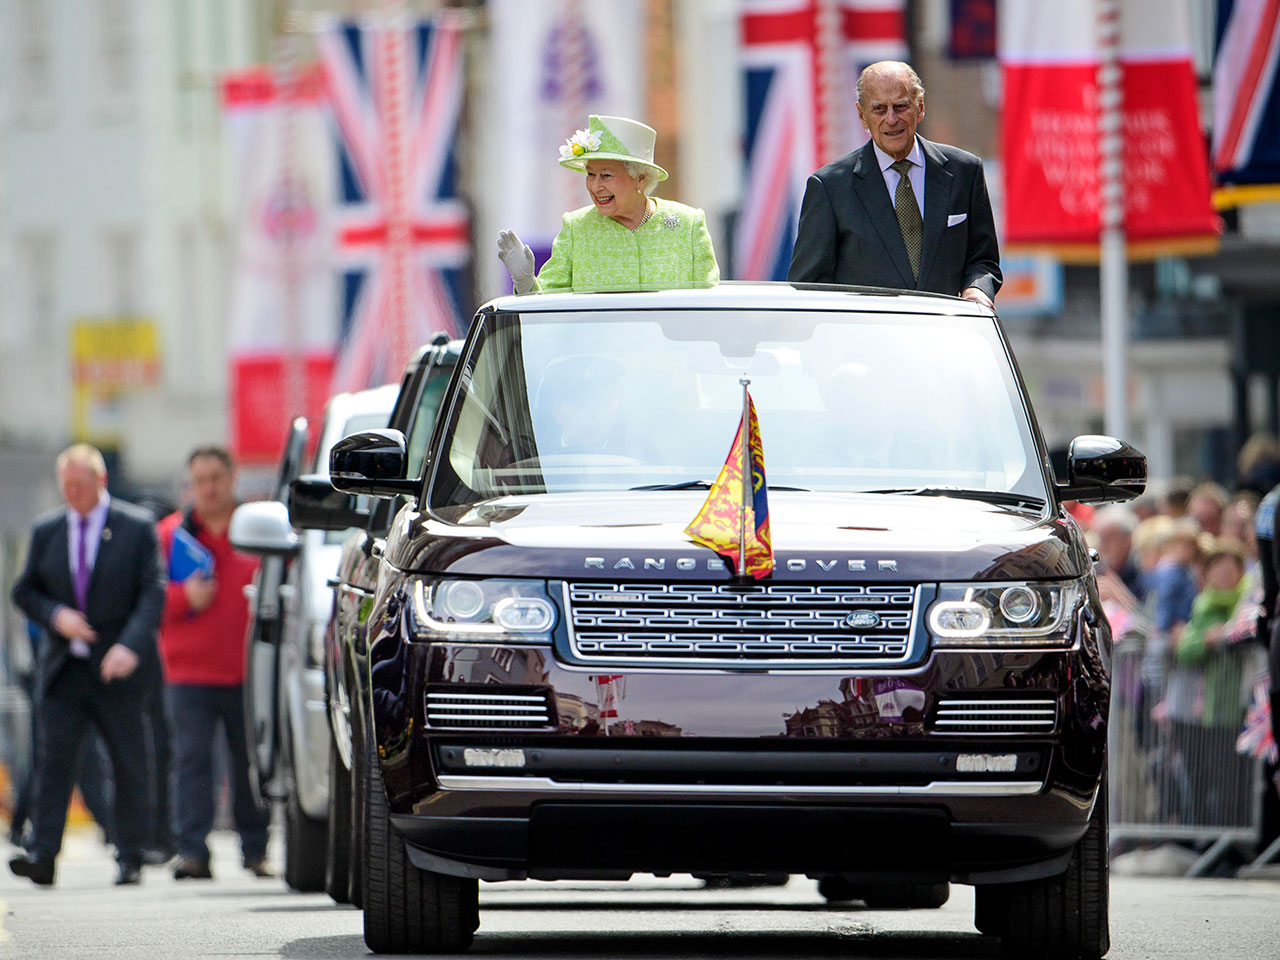 Rainha Elizabeth II em desfile ao lado do Prncipe Philip